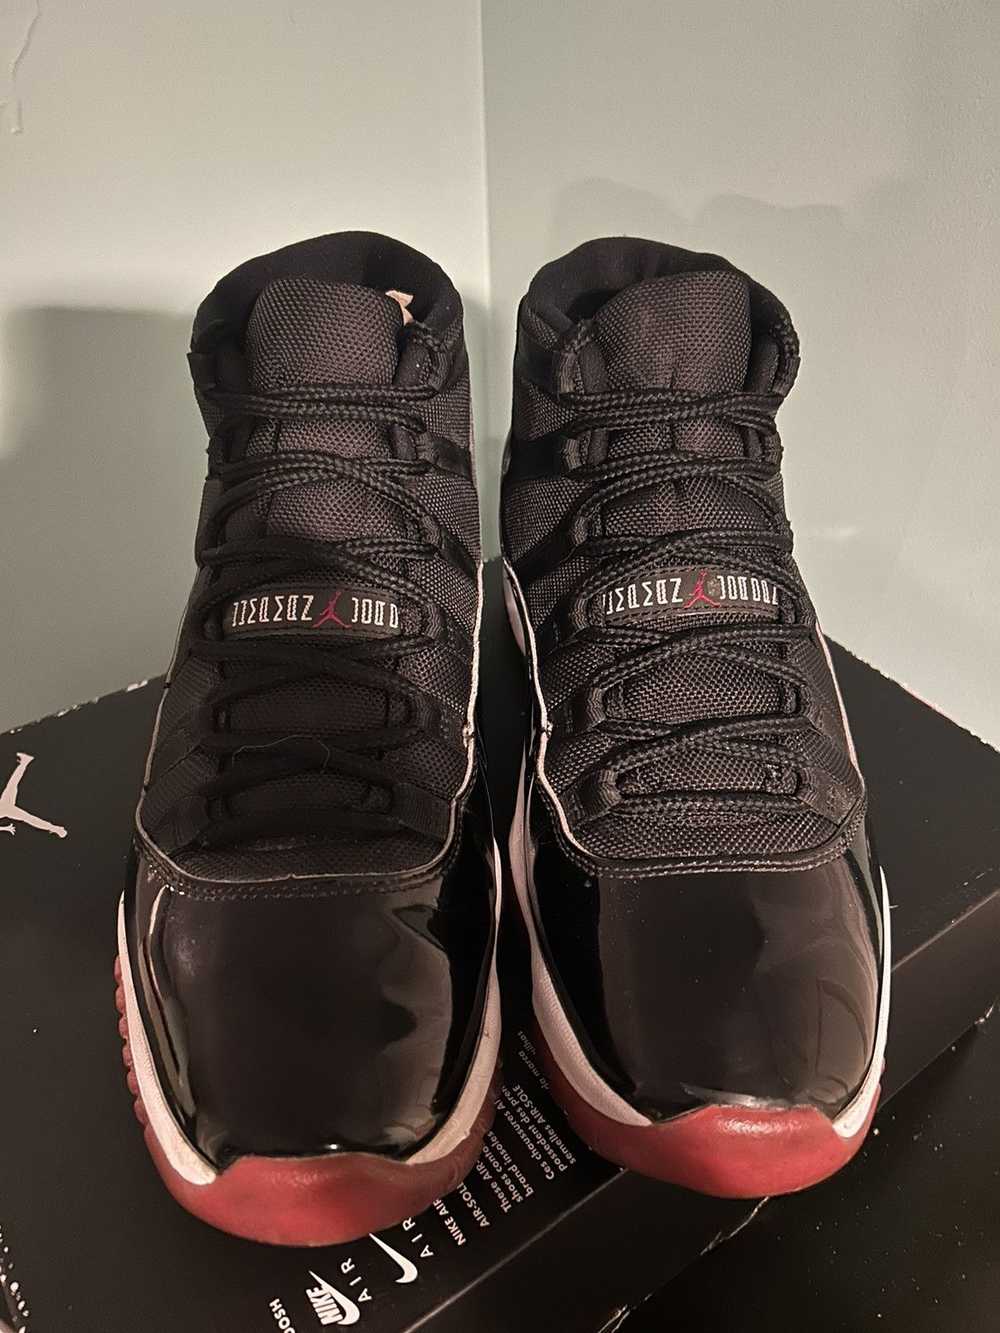 Jordan Brand × Nike 2019 Air Jordan 11 Bred - image 2